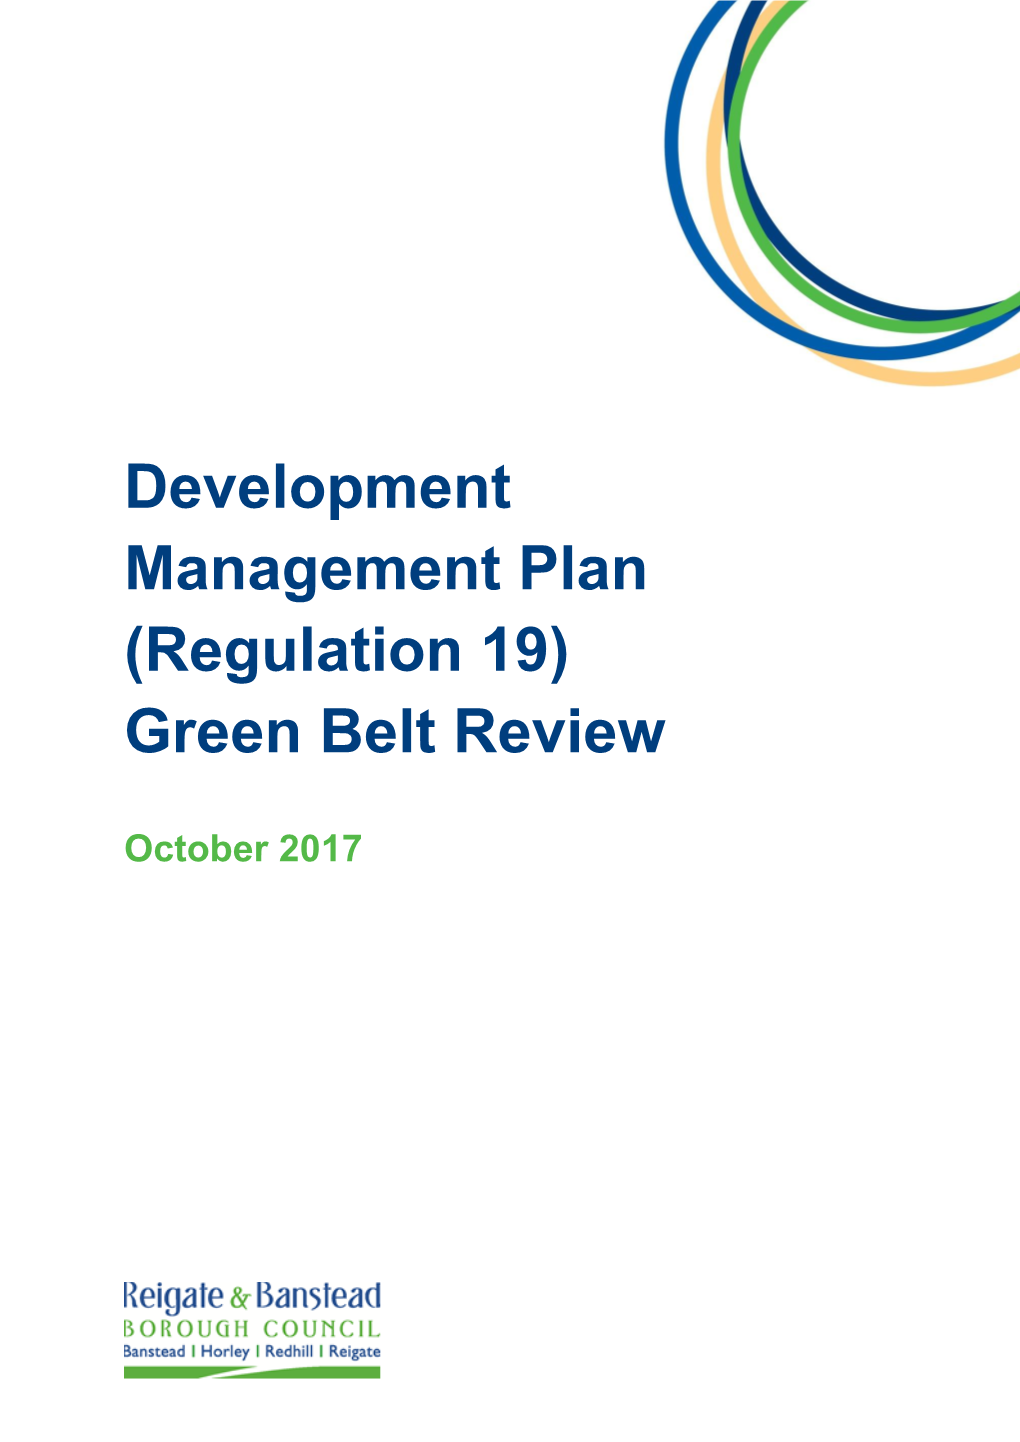 Development Management Plan (Regulation 19) Green Belt Review